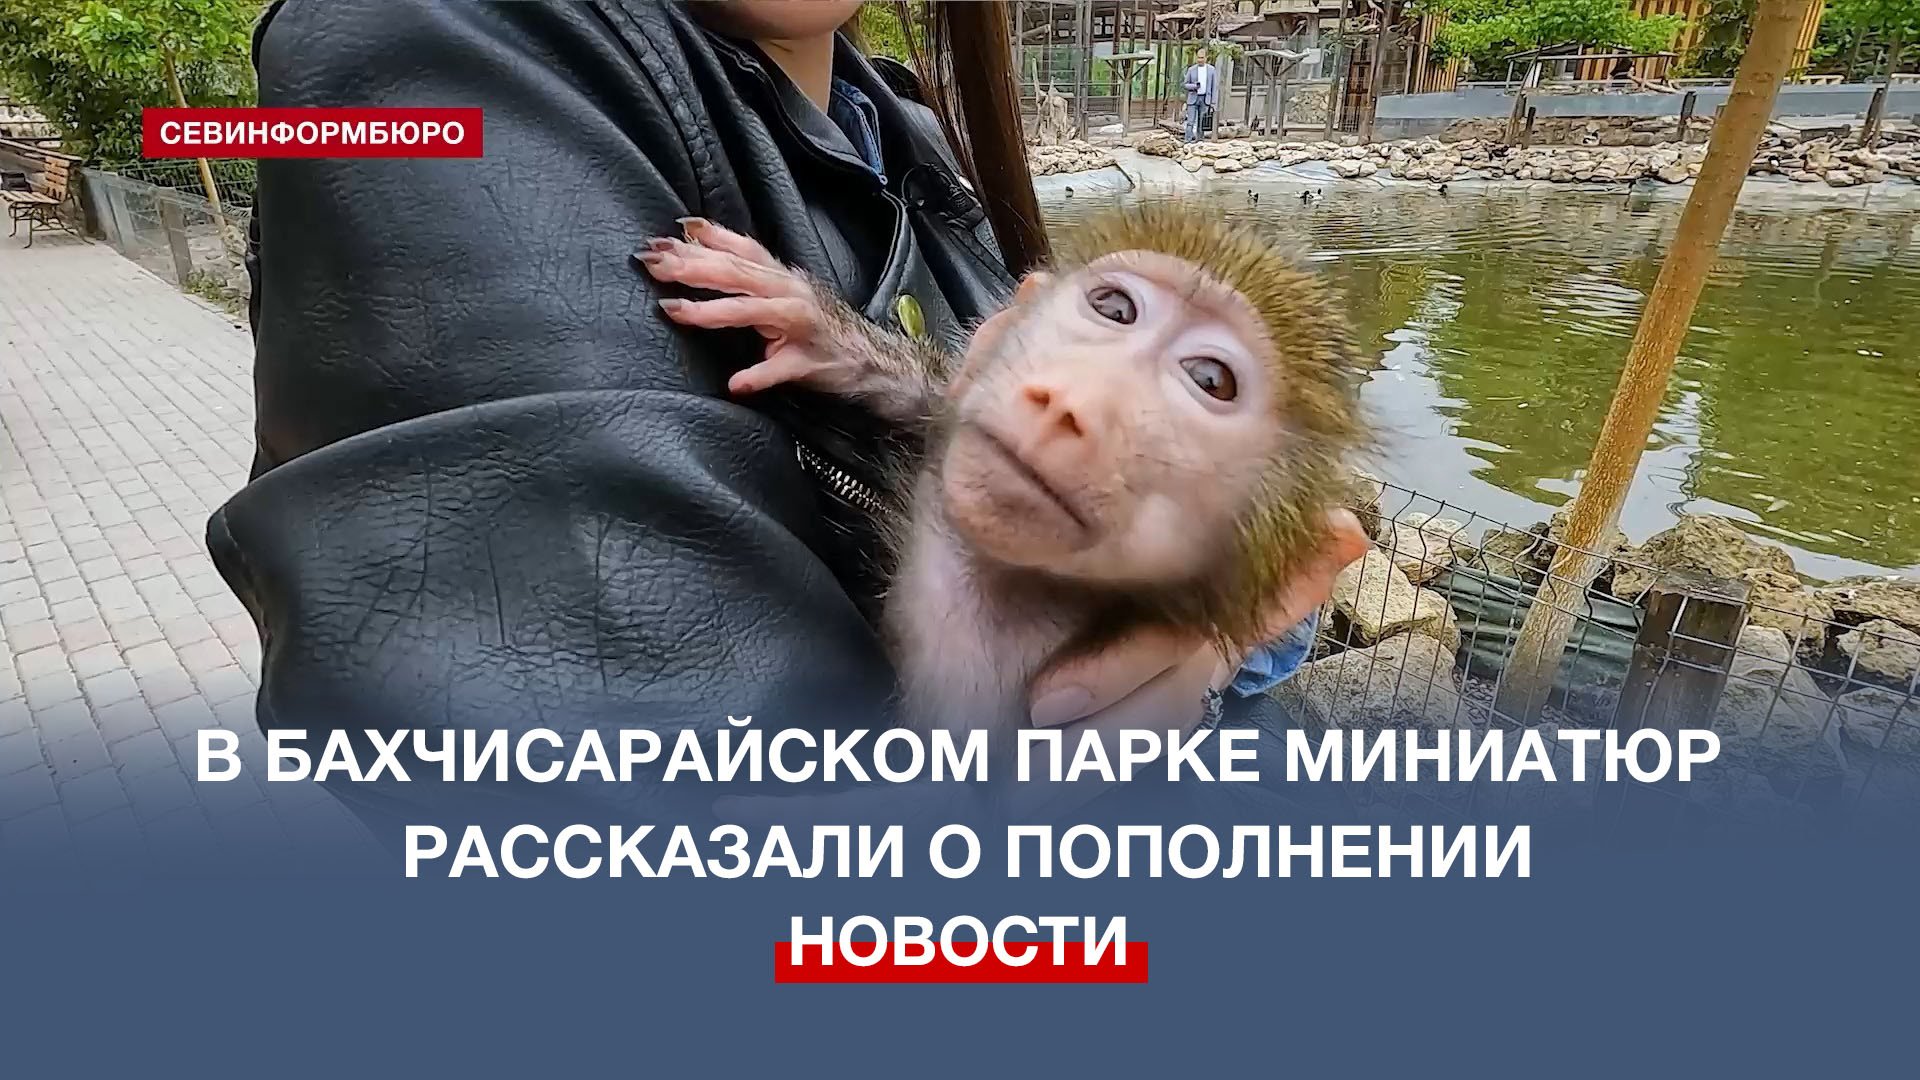 Как живут новорождённые малыши обезьян в Бахчисарайском парке миниатюр?